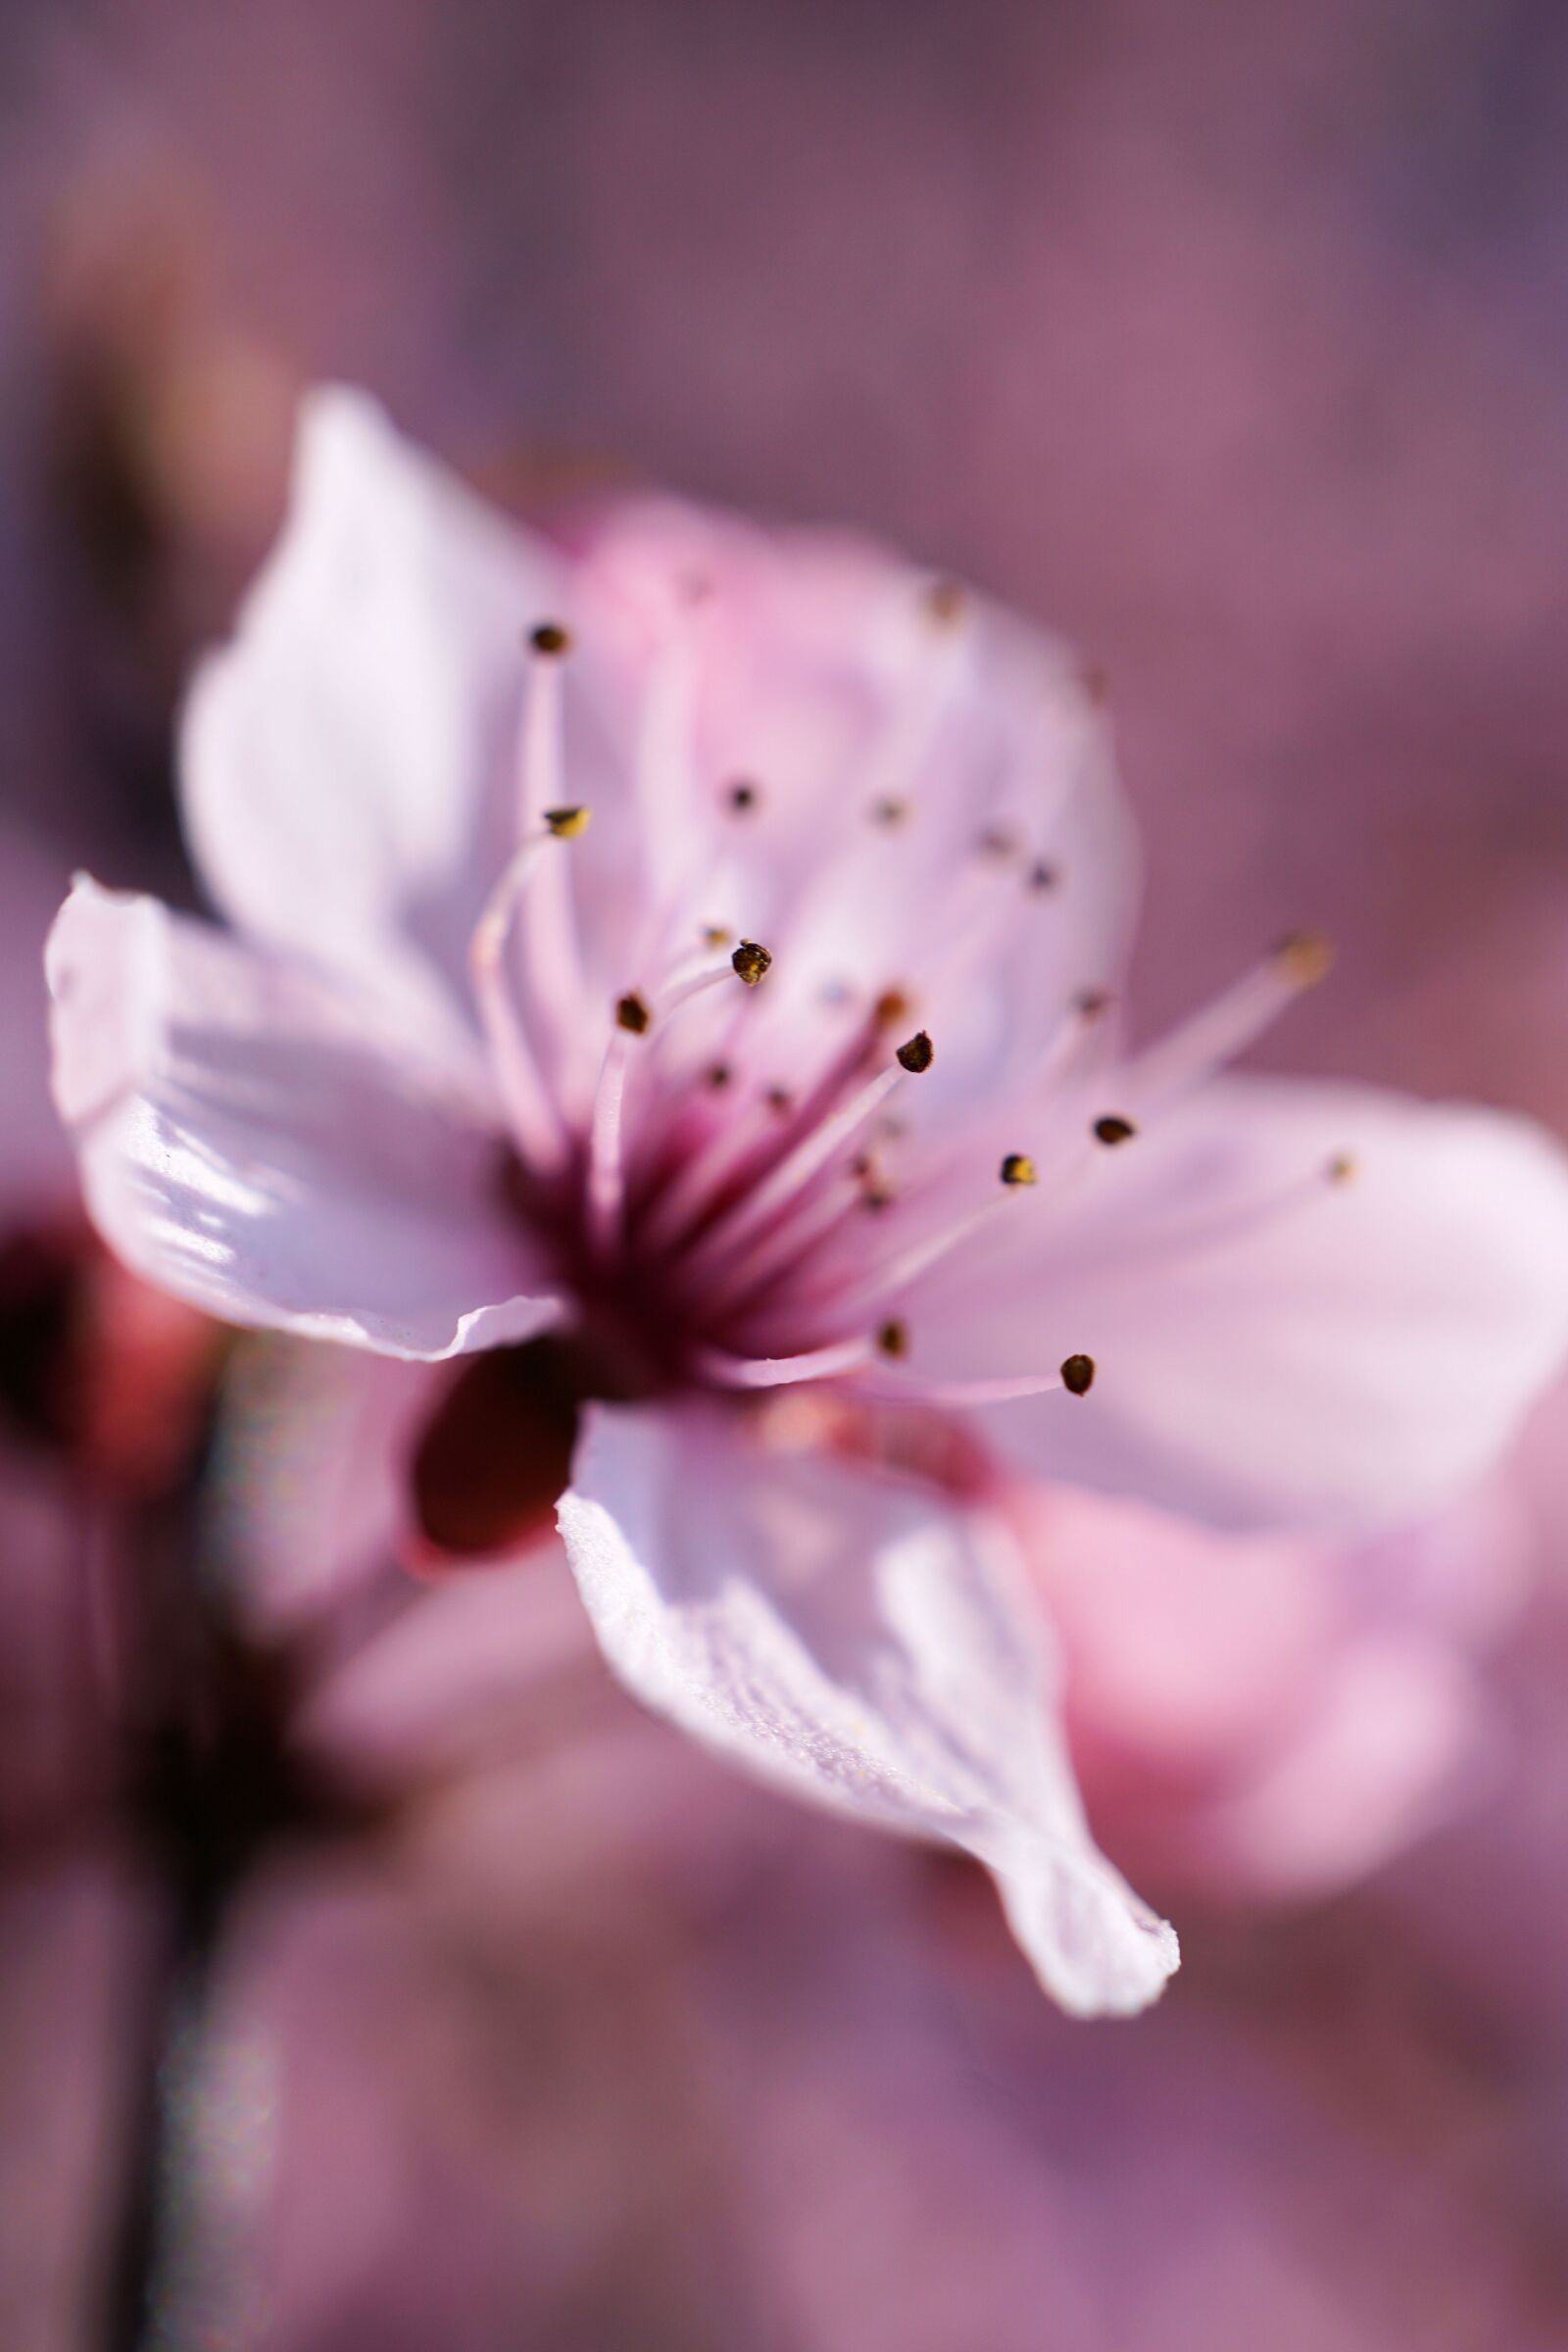 Sony E 30mm F3.5 Macro sample photo. Cherry, blossom, bloom photography